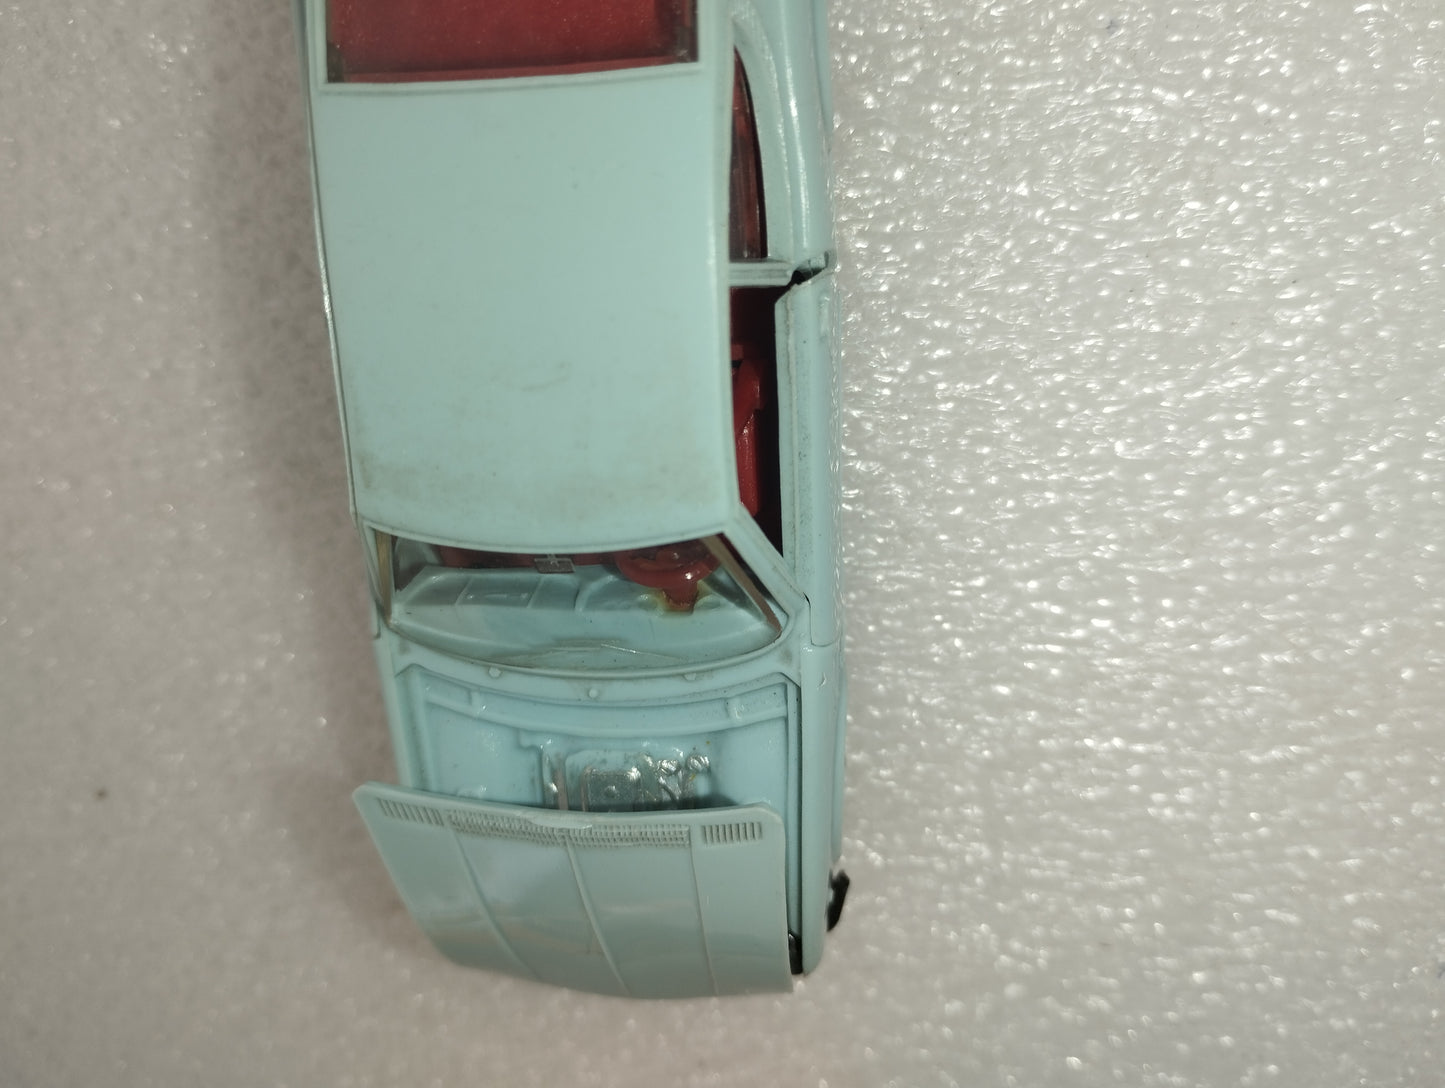 Fiat Dino Coupé Norev 1:43 in plastica